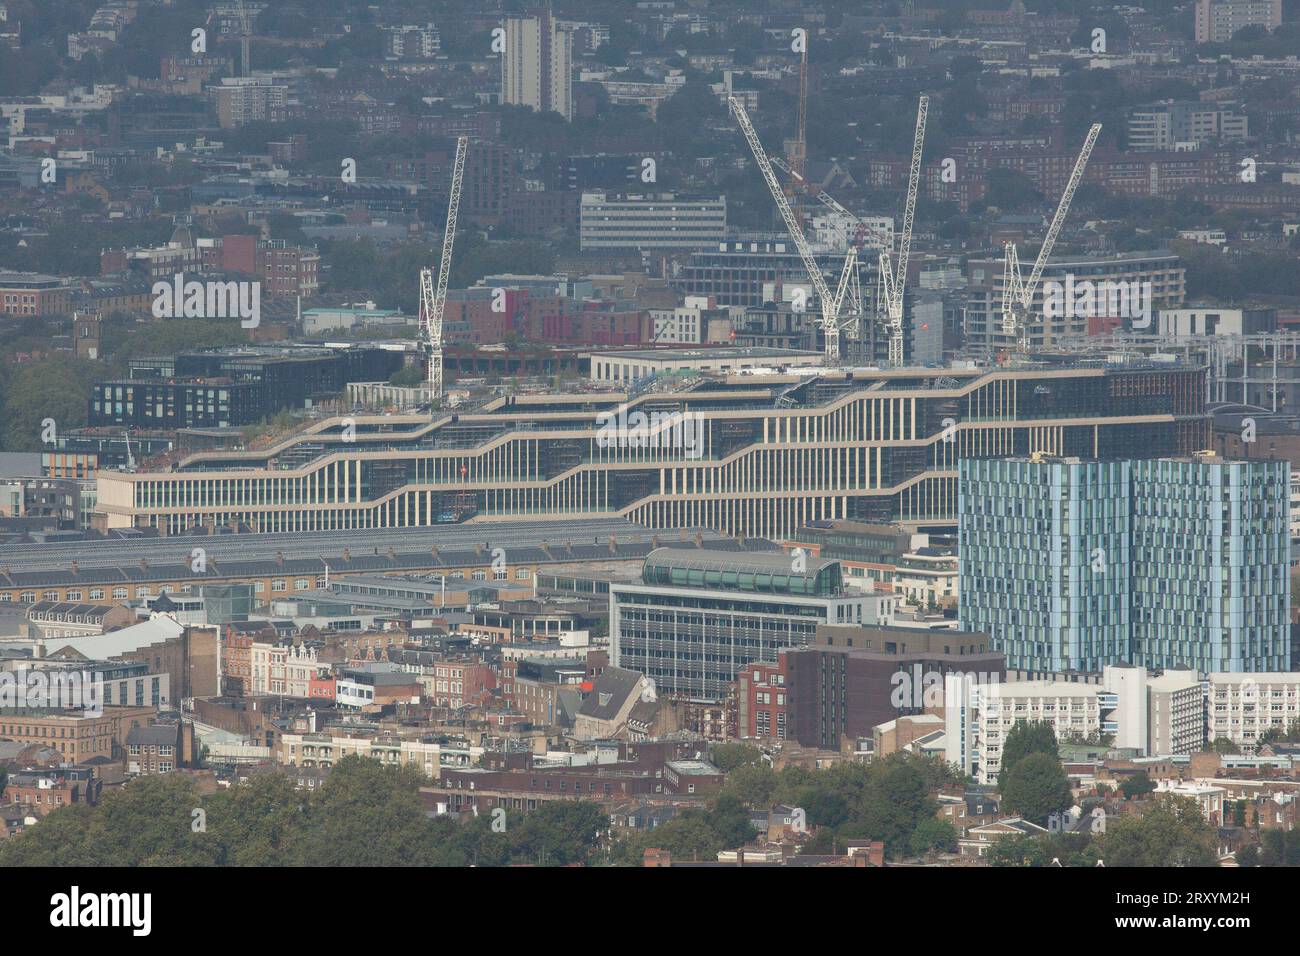 Londres, Royaume-Uni, 27 septembre 2023 : le Crick Institute vu d'un nouveau point de vue libre dans la City de Londres, appelé Horizon22. C'est le point de vue libre le plus élevé d'Europe avec des visiteurs ayant une vue dégagée sur le Cheesegrater et le Shard, et juste à travers Londres. Anna Watson/Alamy Live News Banque D'Images